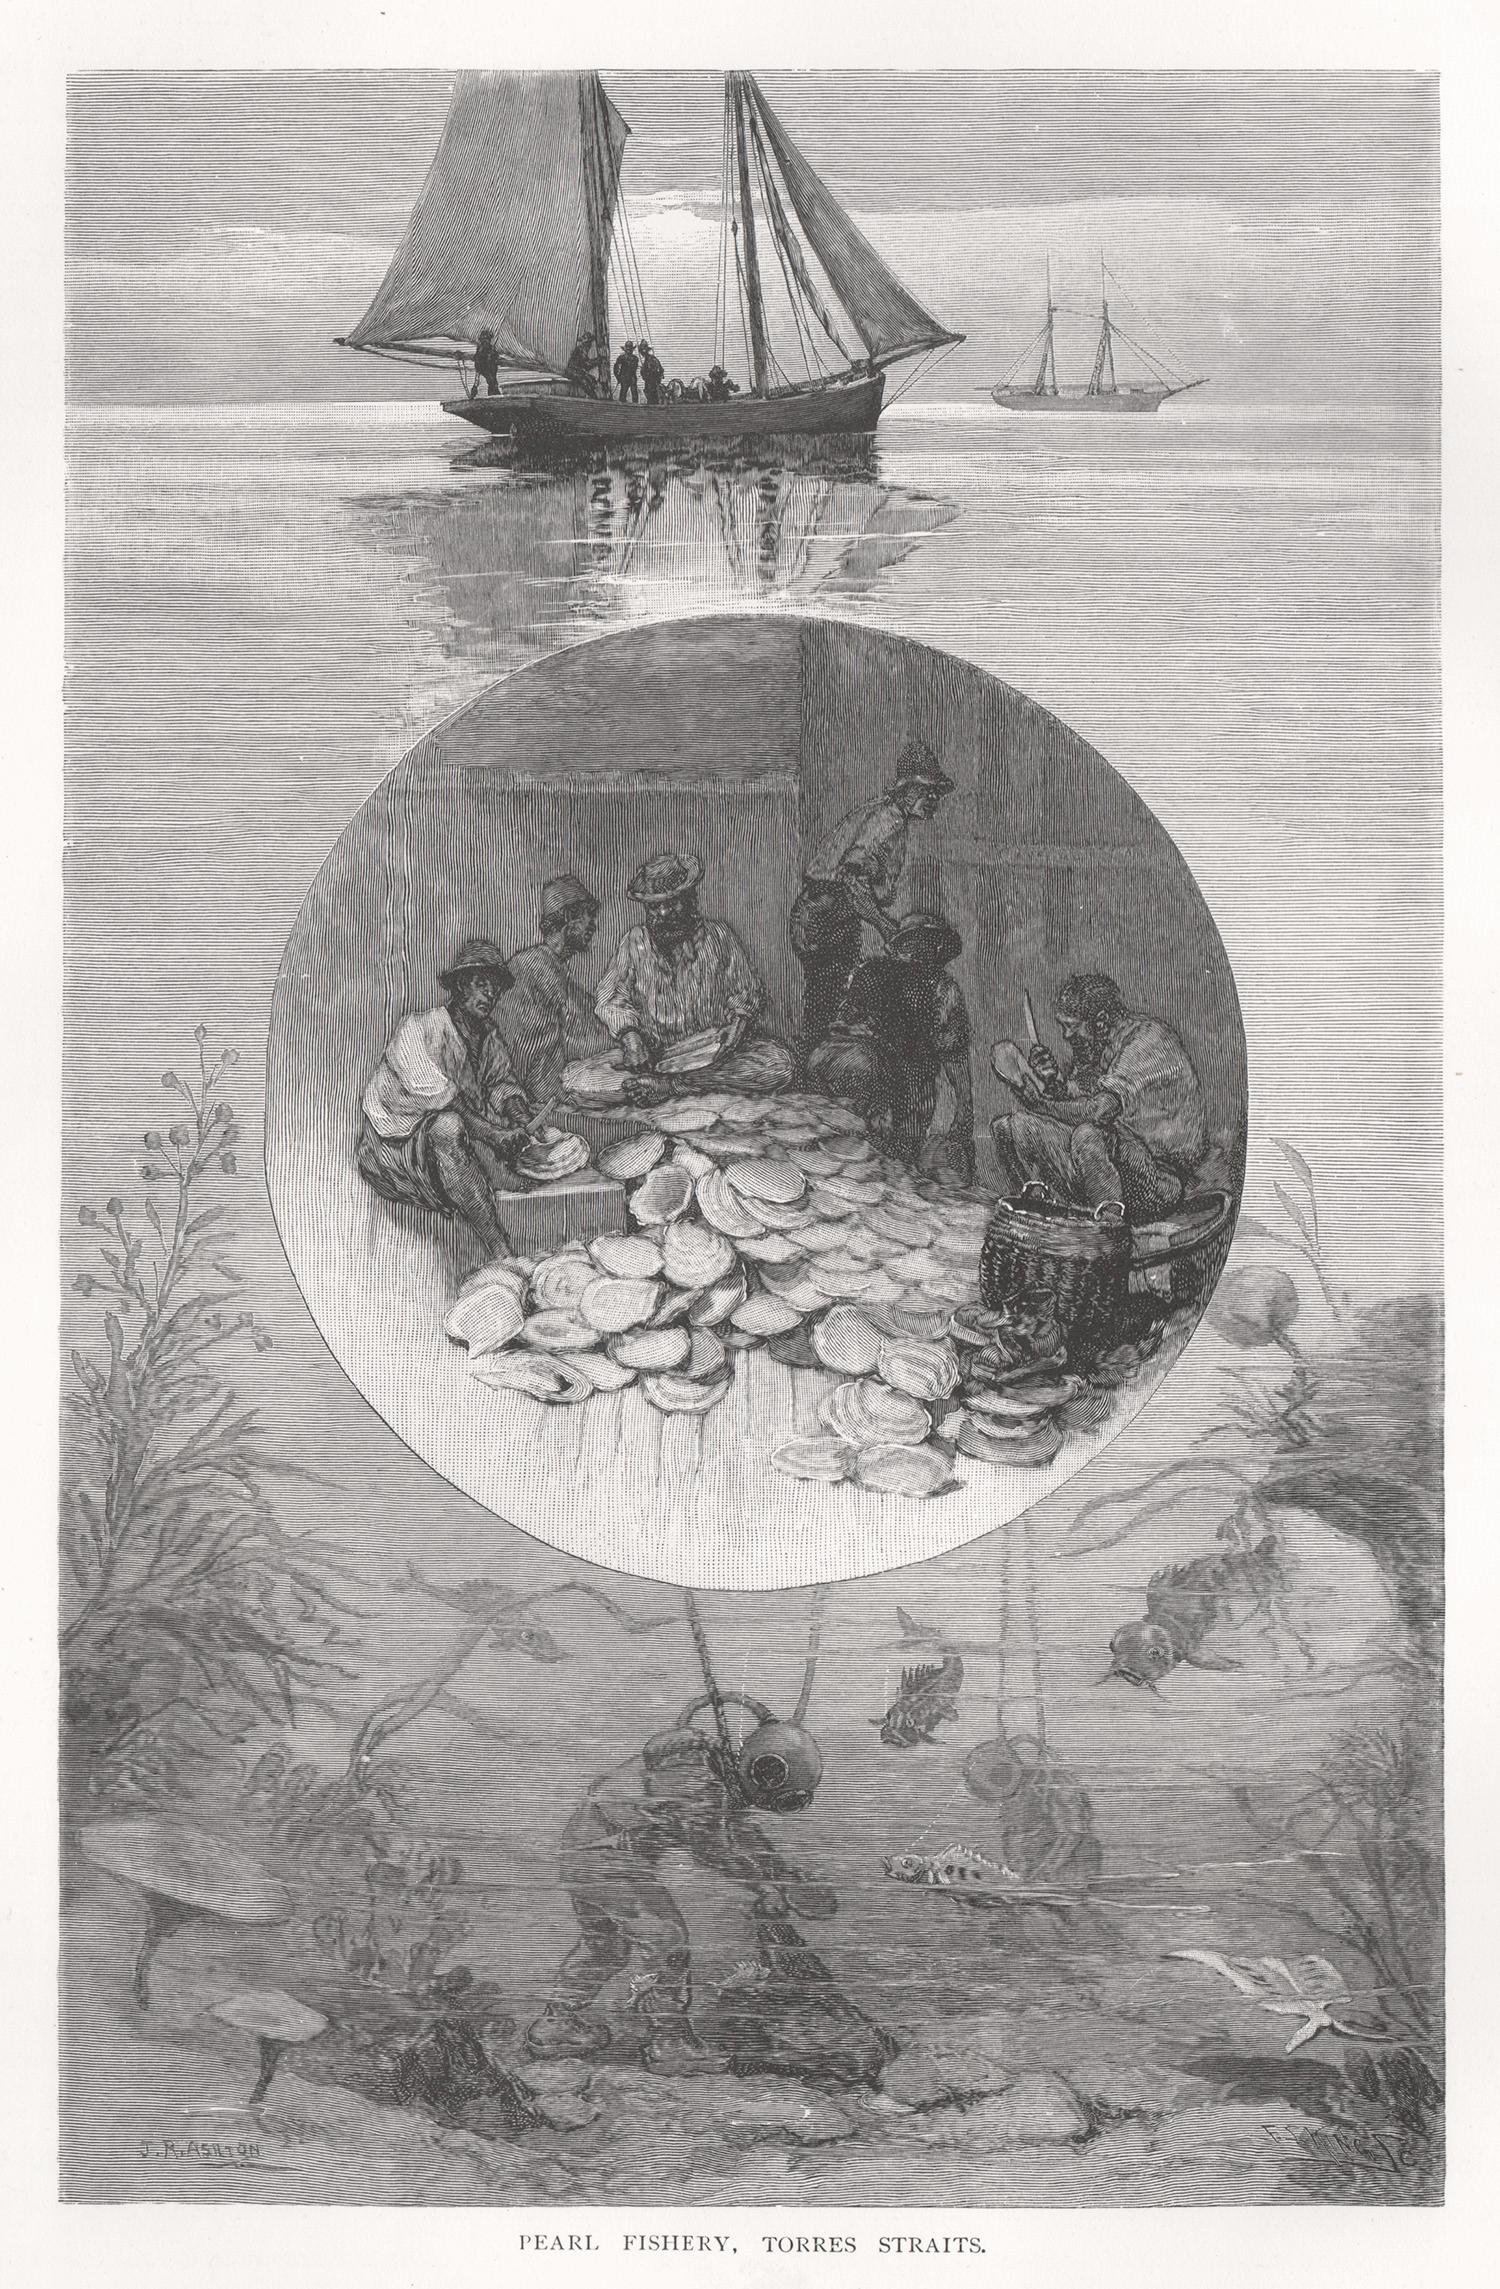 Fisherie à la perle, Torres Straits, gravure sur bois de plongée ancienne des années 1880